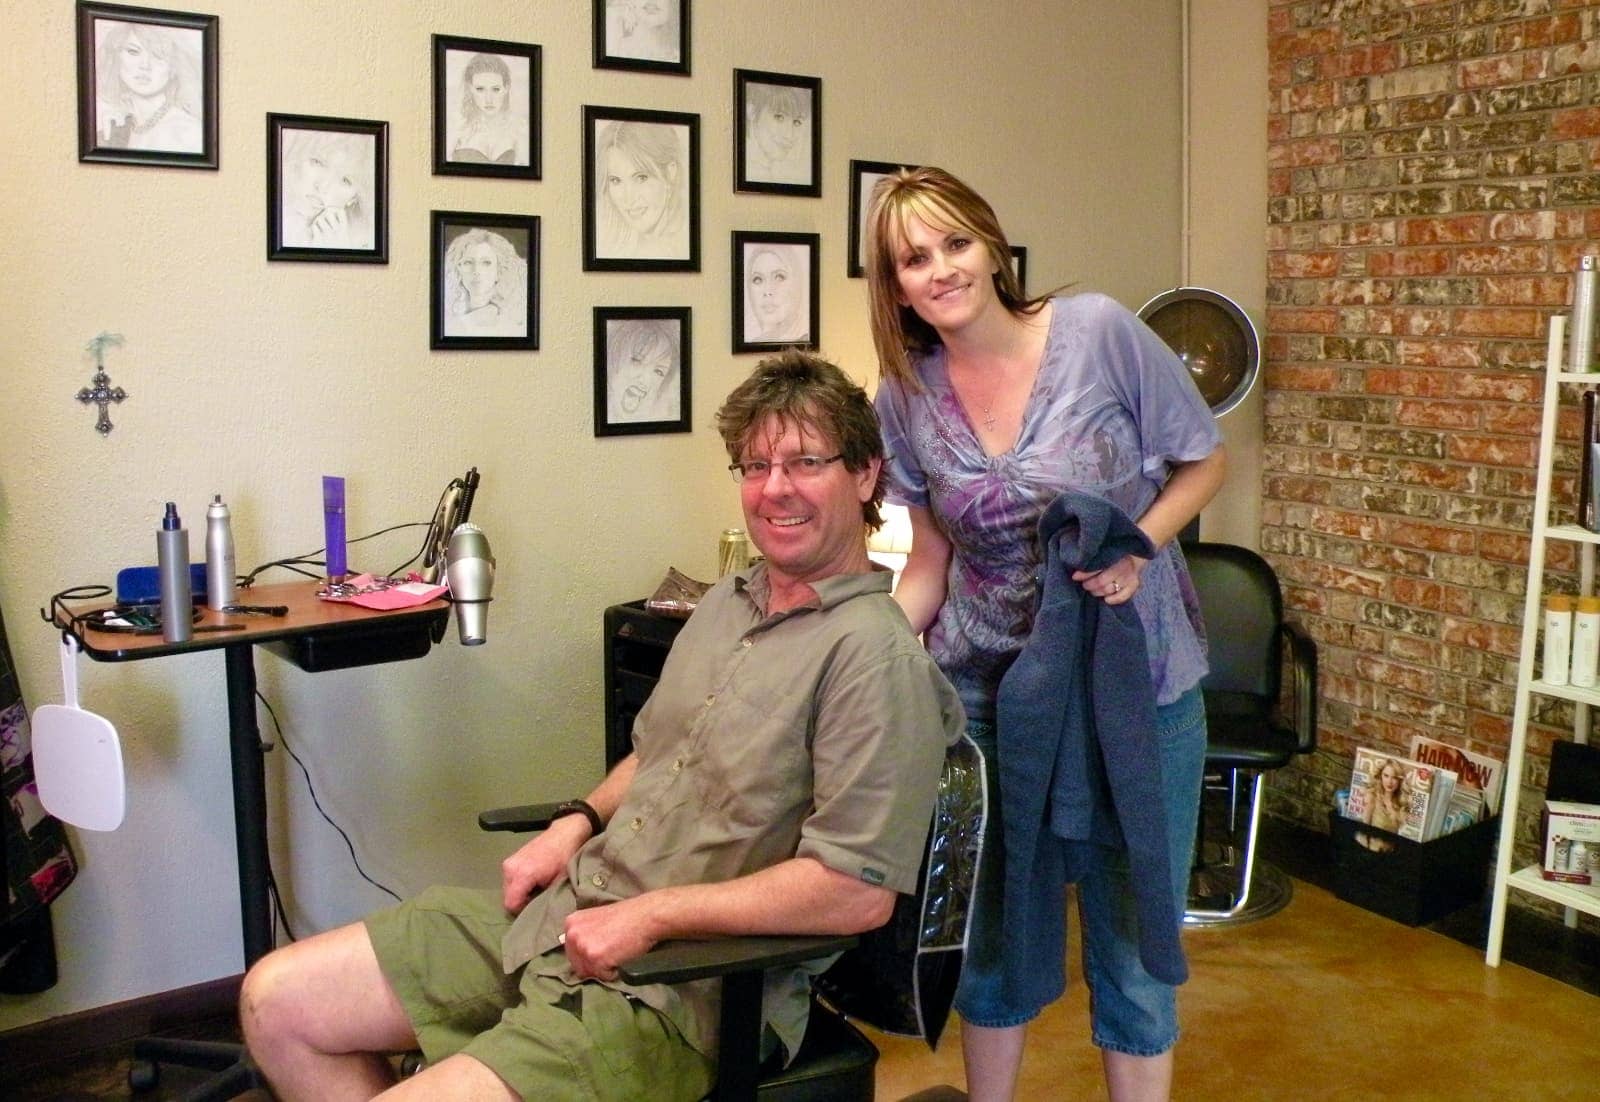 Man receiving a hair cut from a woman